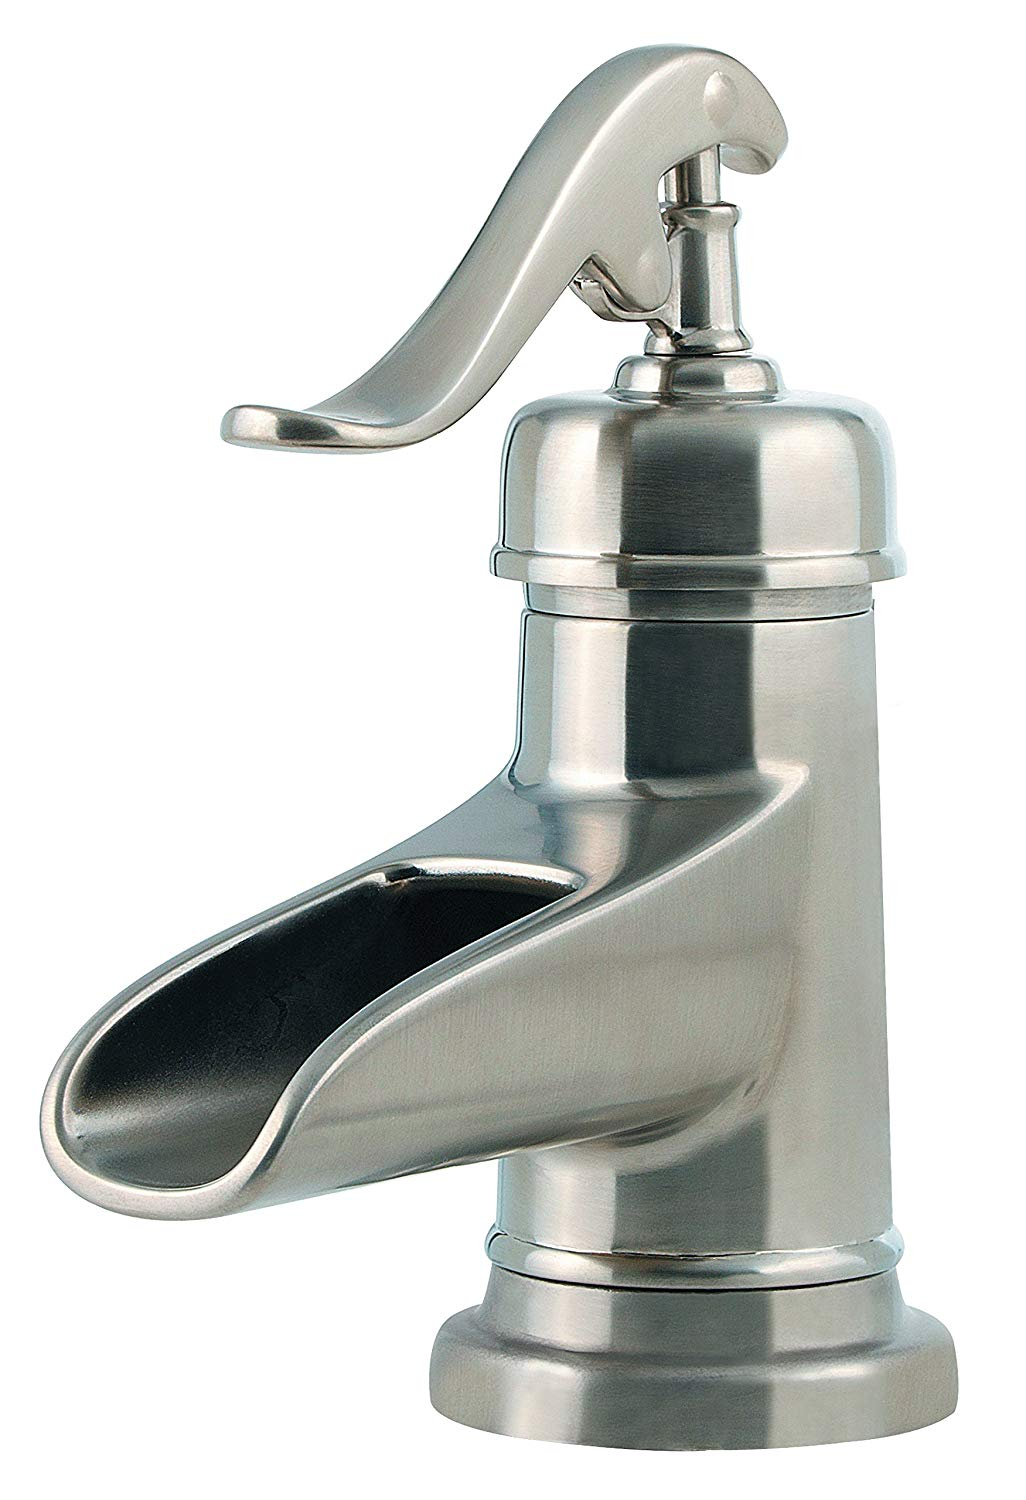 Bathroom Faucet Pump Style Faucet Decoration Ideas pertaining to measurements 1026 X 1500